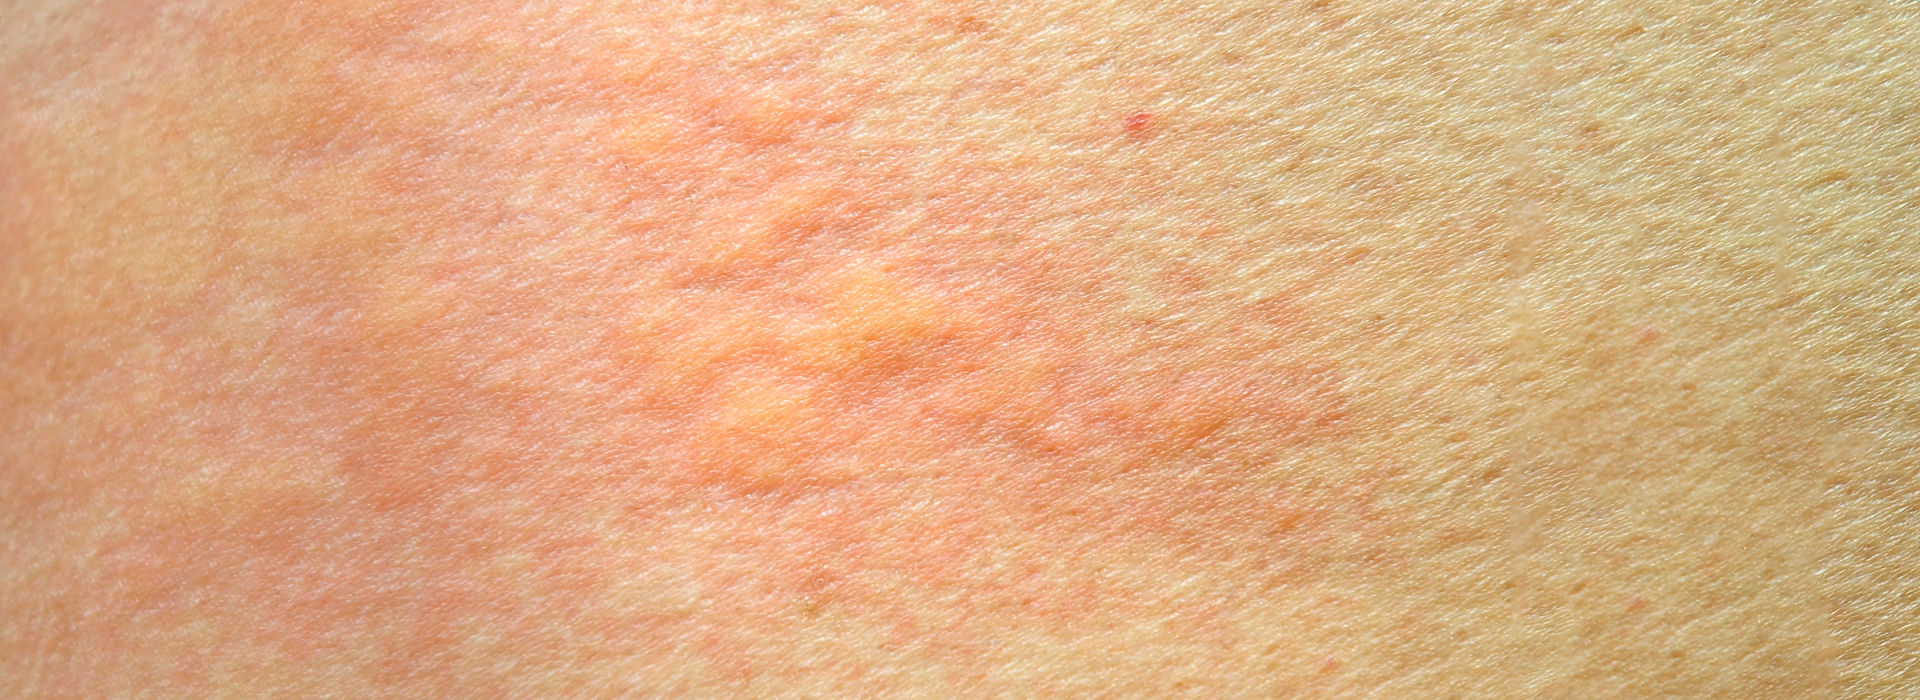 Skin rash